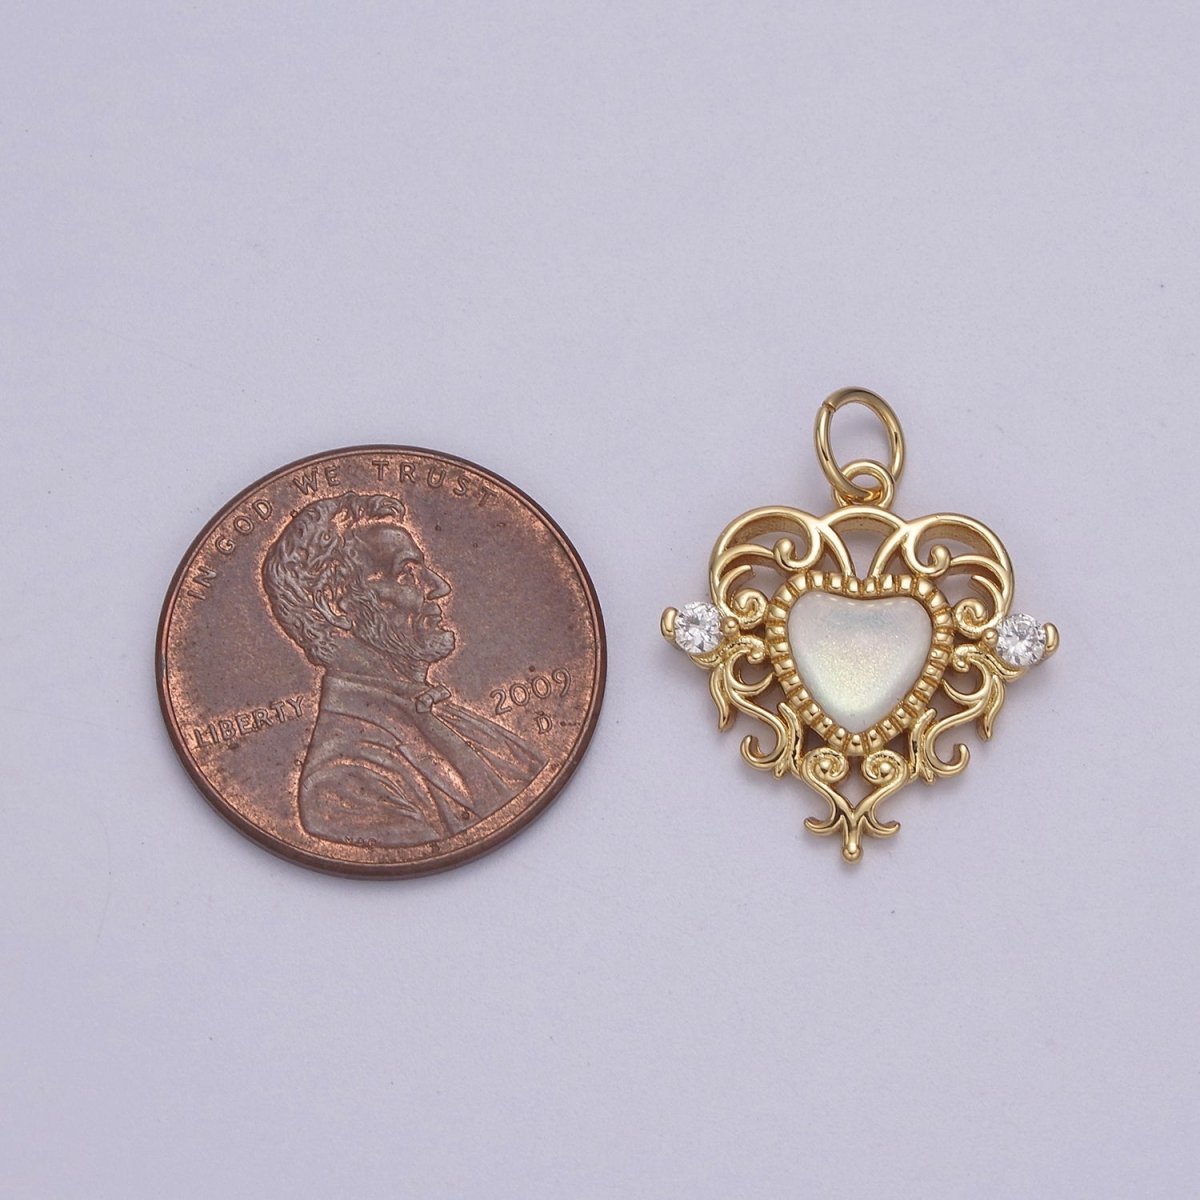 Mini Gold Heart Swirl Charm with CZ Stone N-866 N-867 - DLUXCA